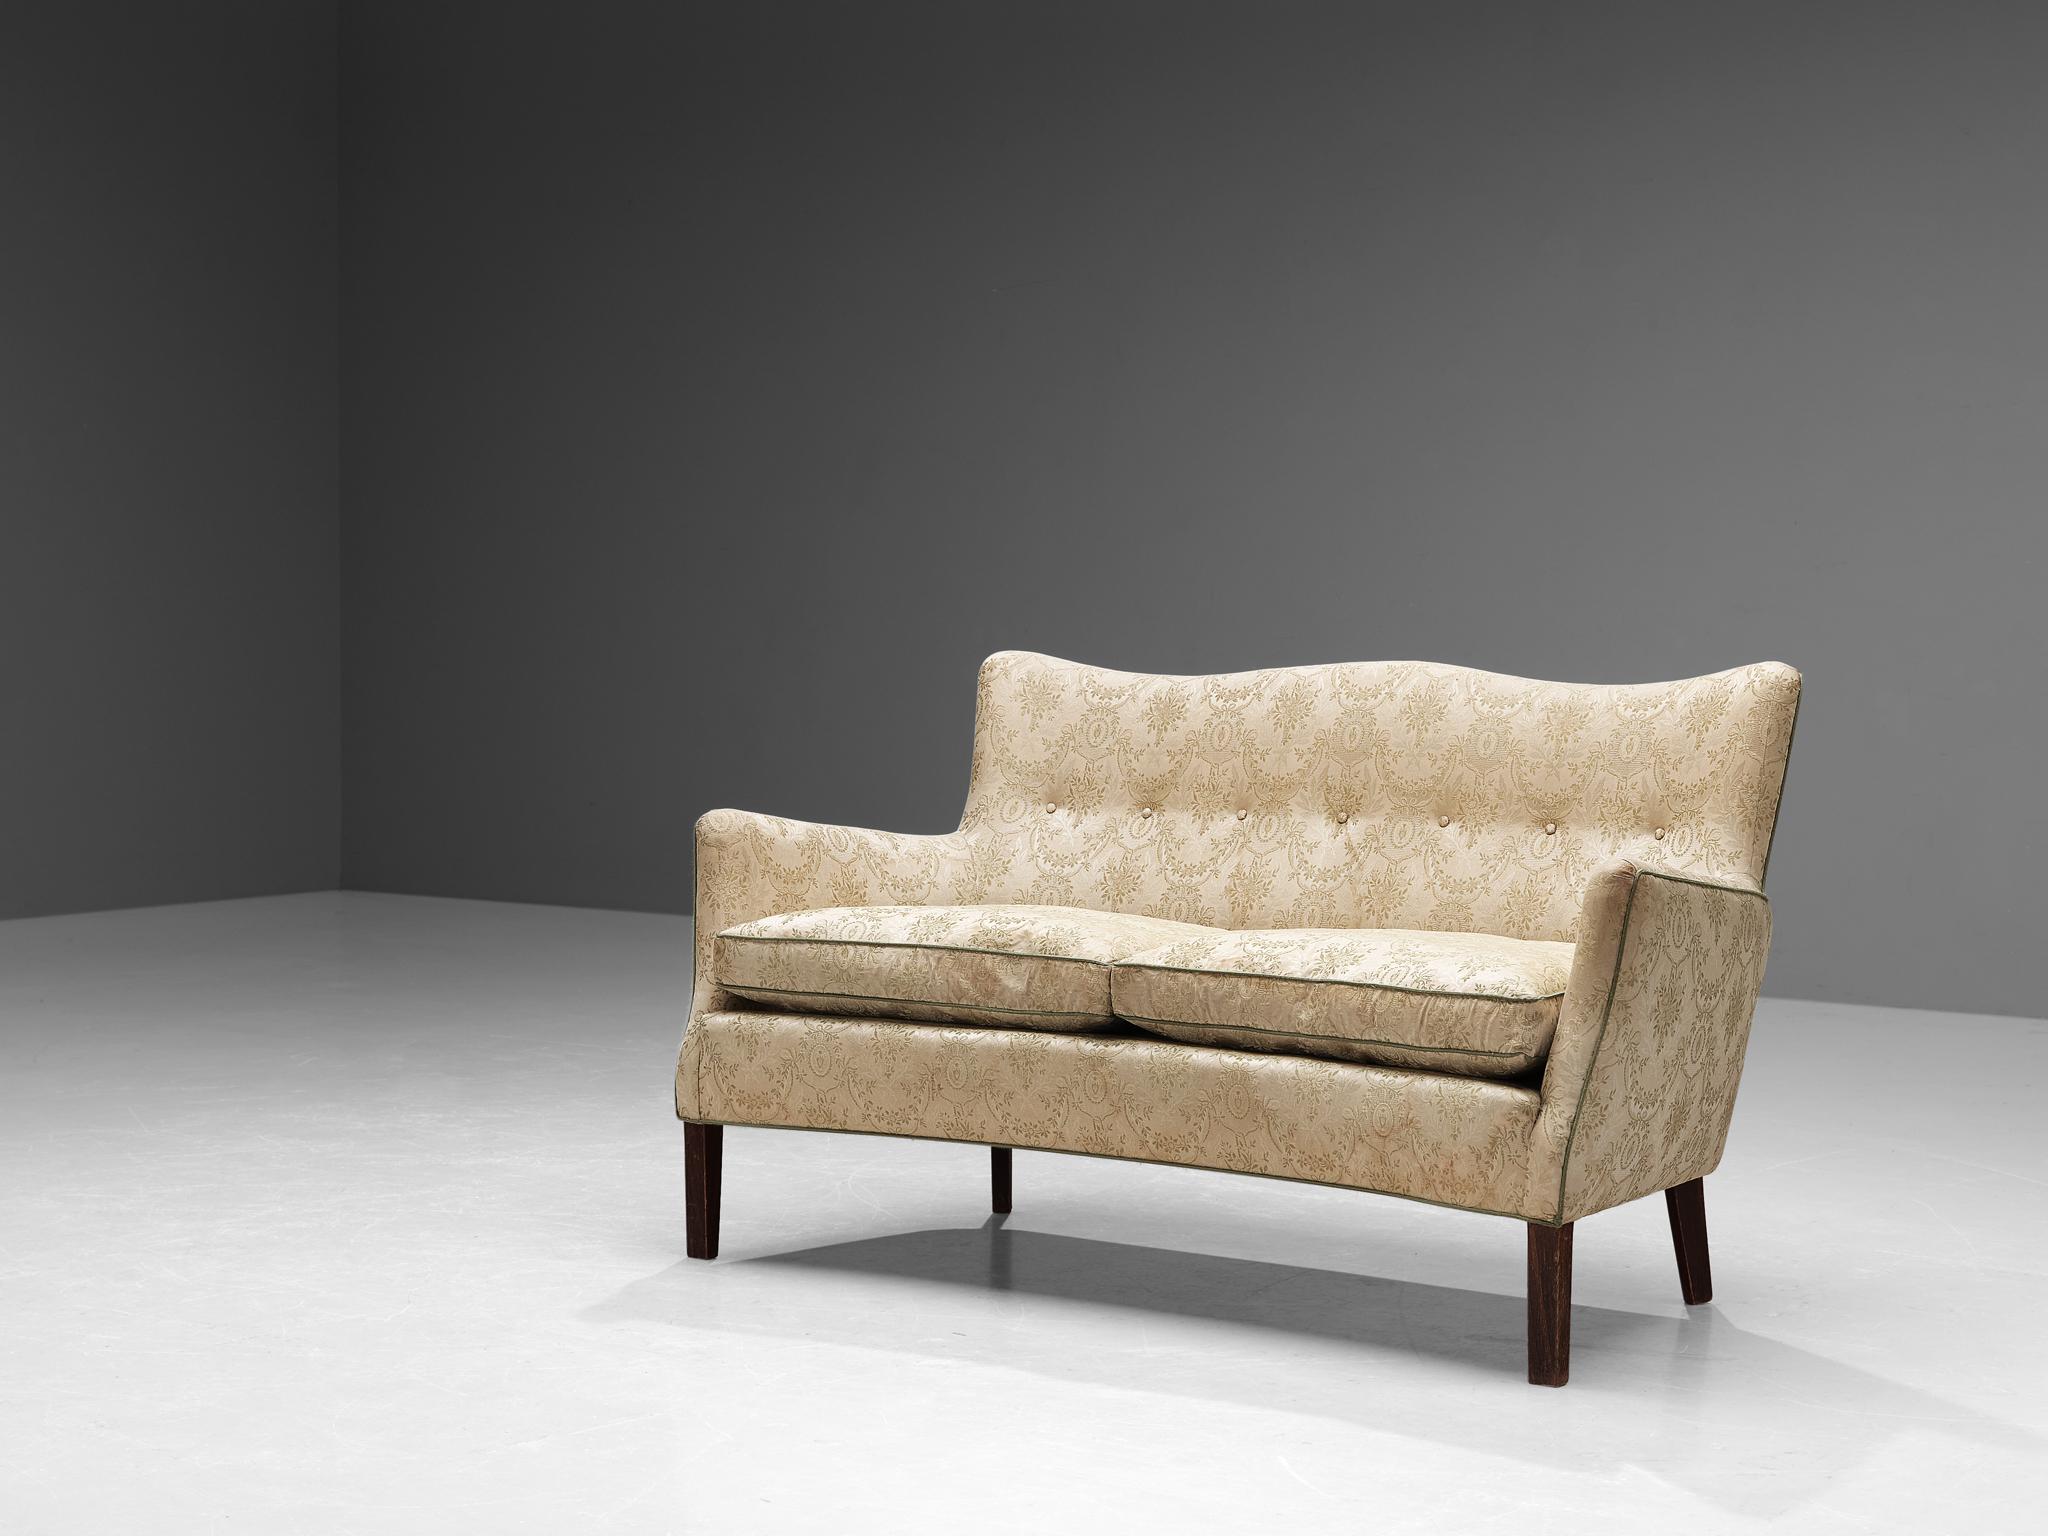 Sofa, Stoff, Holz, Dänemark, 1950er Jahre.

Dieses Sofa hat das Flair und die Lebendigkeit eines typisch dänischen Möbelstücks aus der Mitte des Jahrhunderts. Dieses besondere Design lädt durch seine imposante, hohe und leicht geneigte Rückenlehne